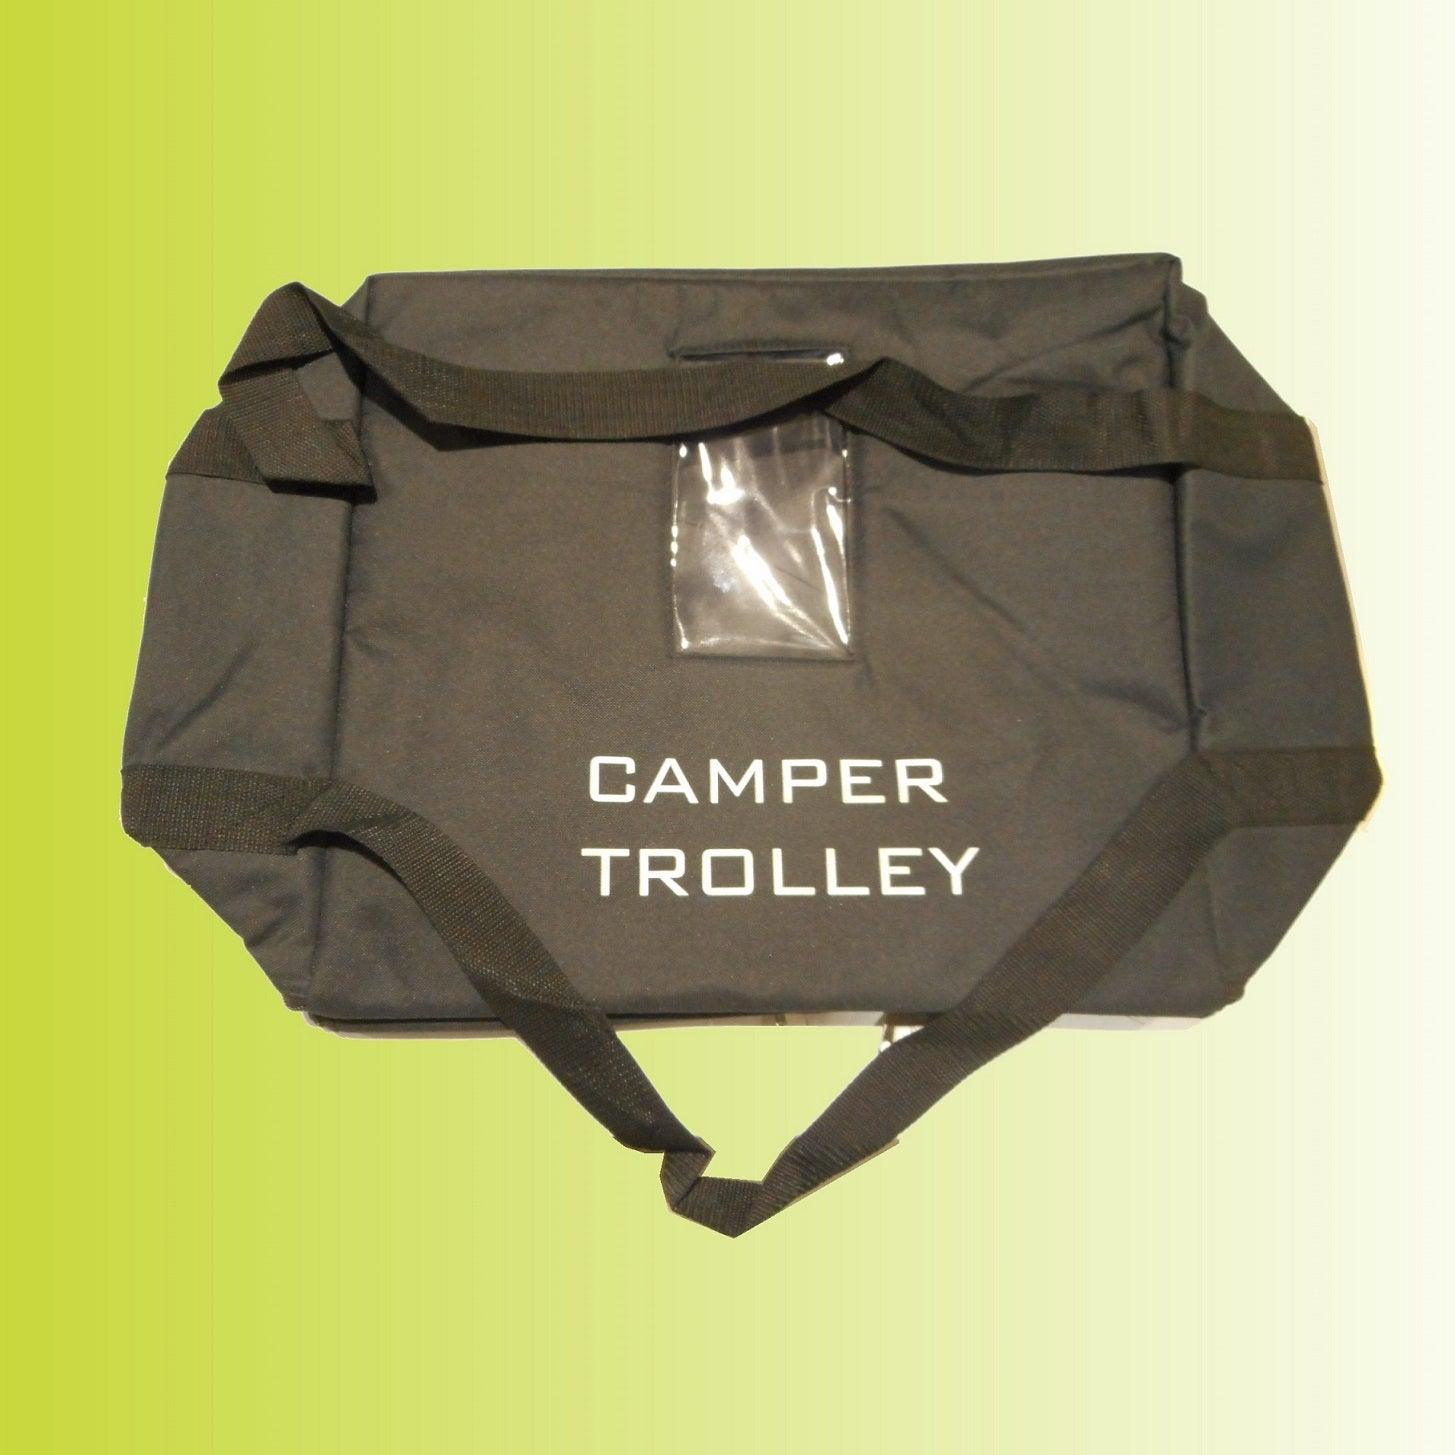 Camper Trolley Storage Bag - Aussie Traveller